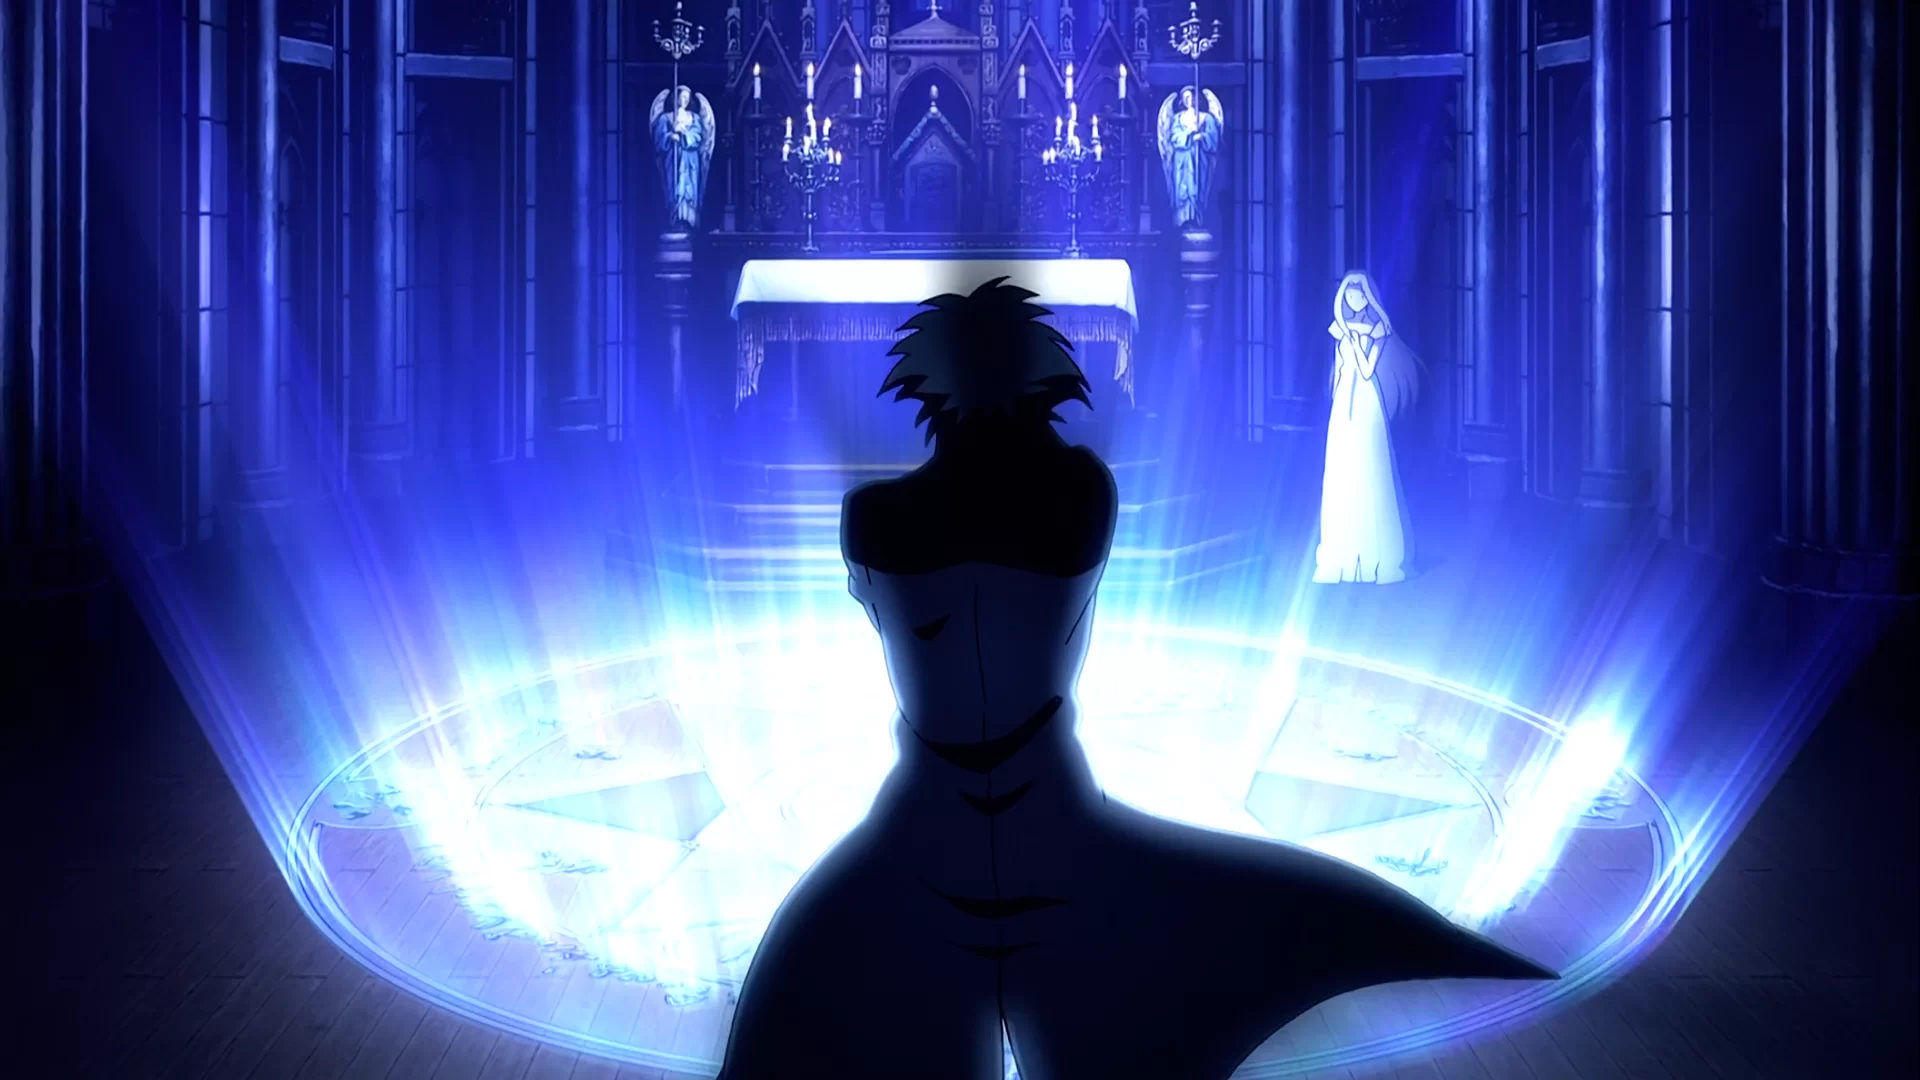 Minaturka 1 odcinka anime Fate/Zero